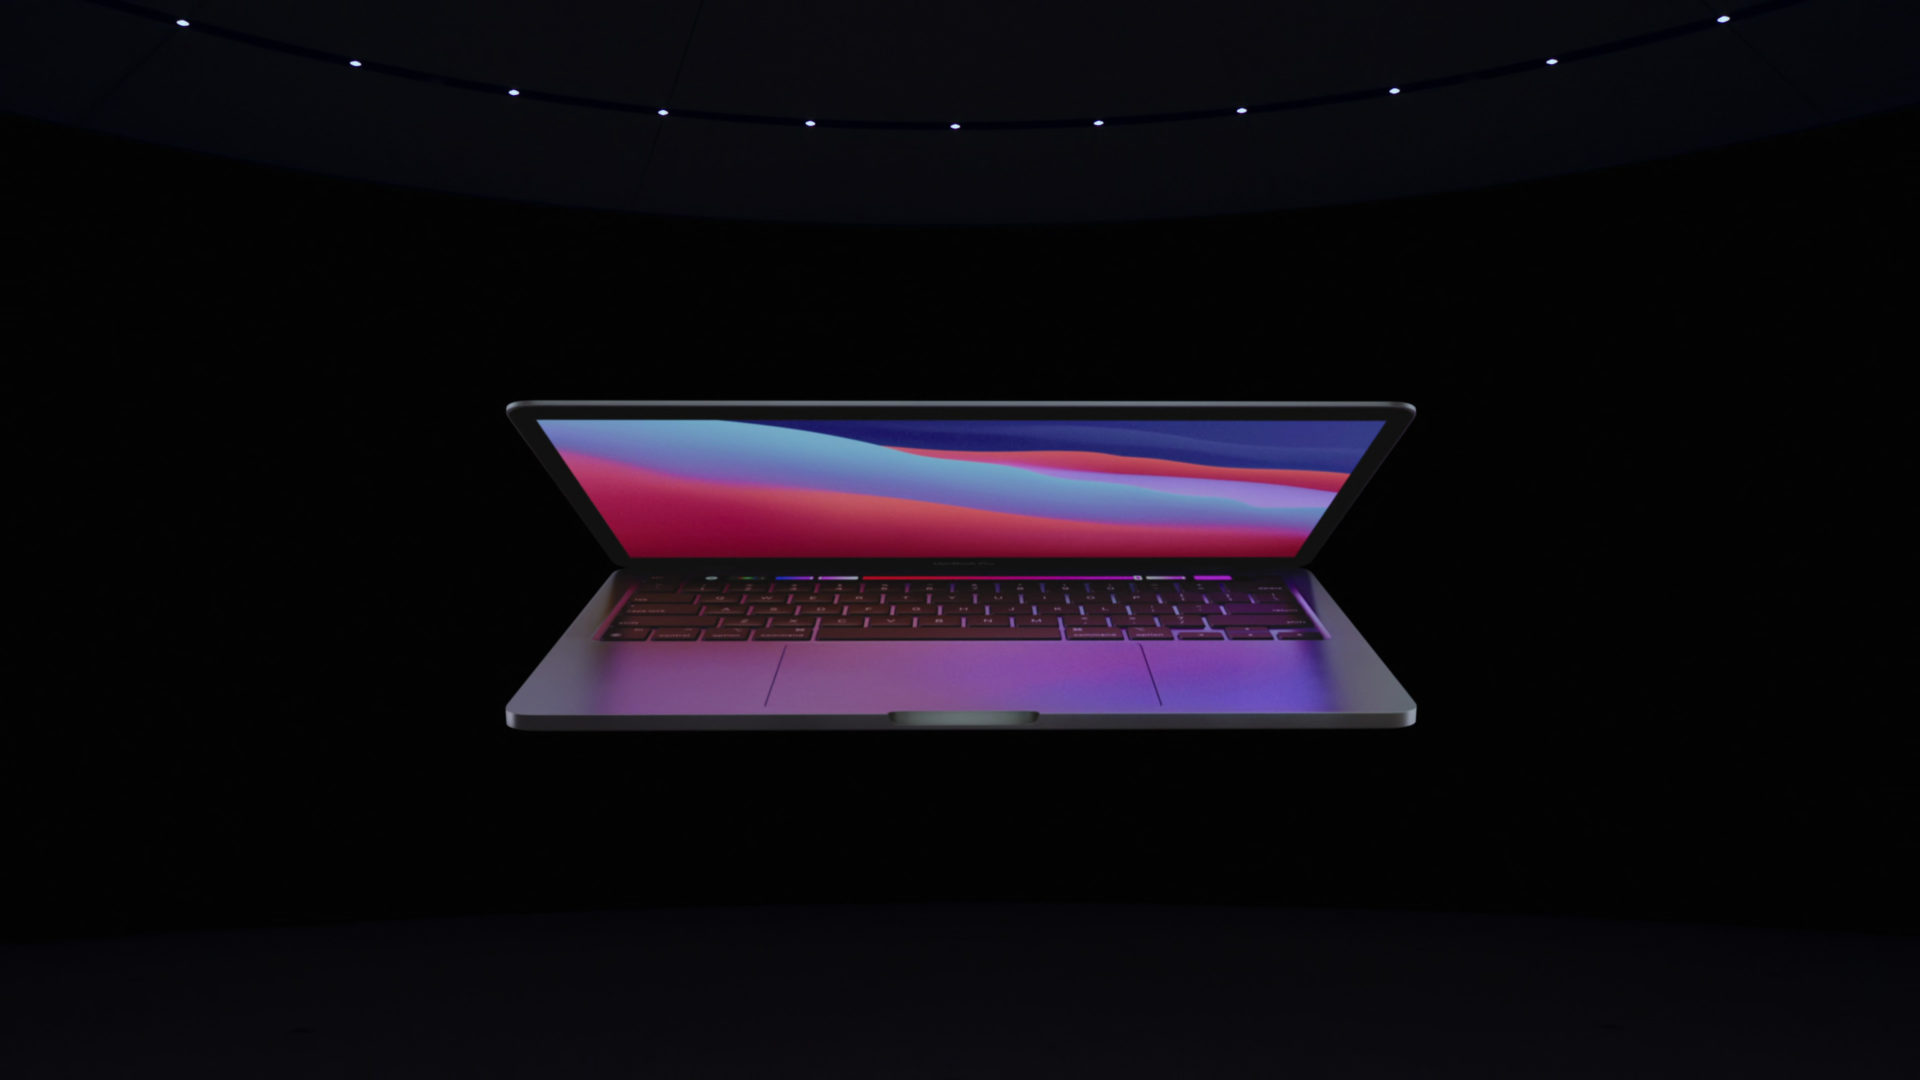 ลือสนั่น!! นักวิเคราะห์ยืนยัน MacBook Pro ดีไซน์ใหม่ 14 และ 16 นิ้ว จะเปิดตัวในงาน WWDC21 อาทิตย์หน้าแล้ว